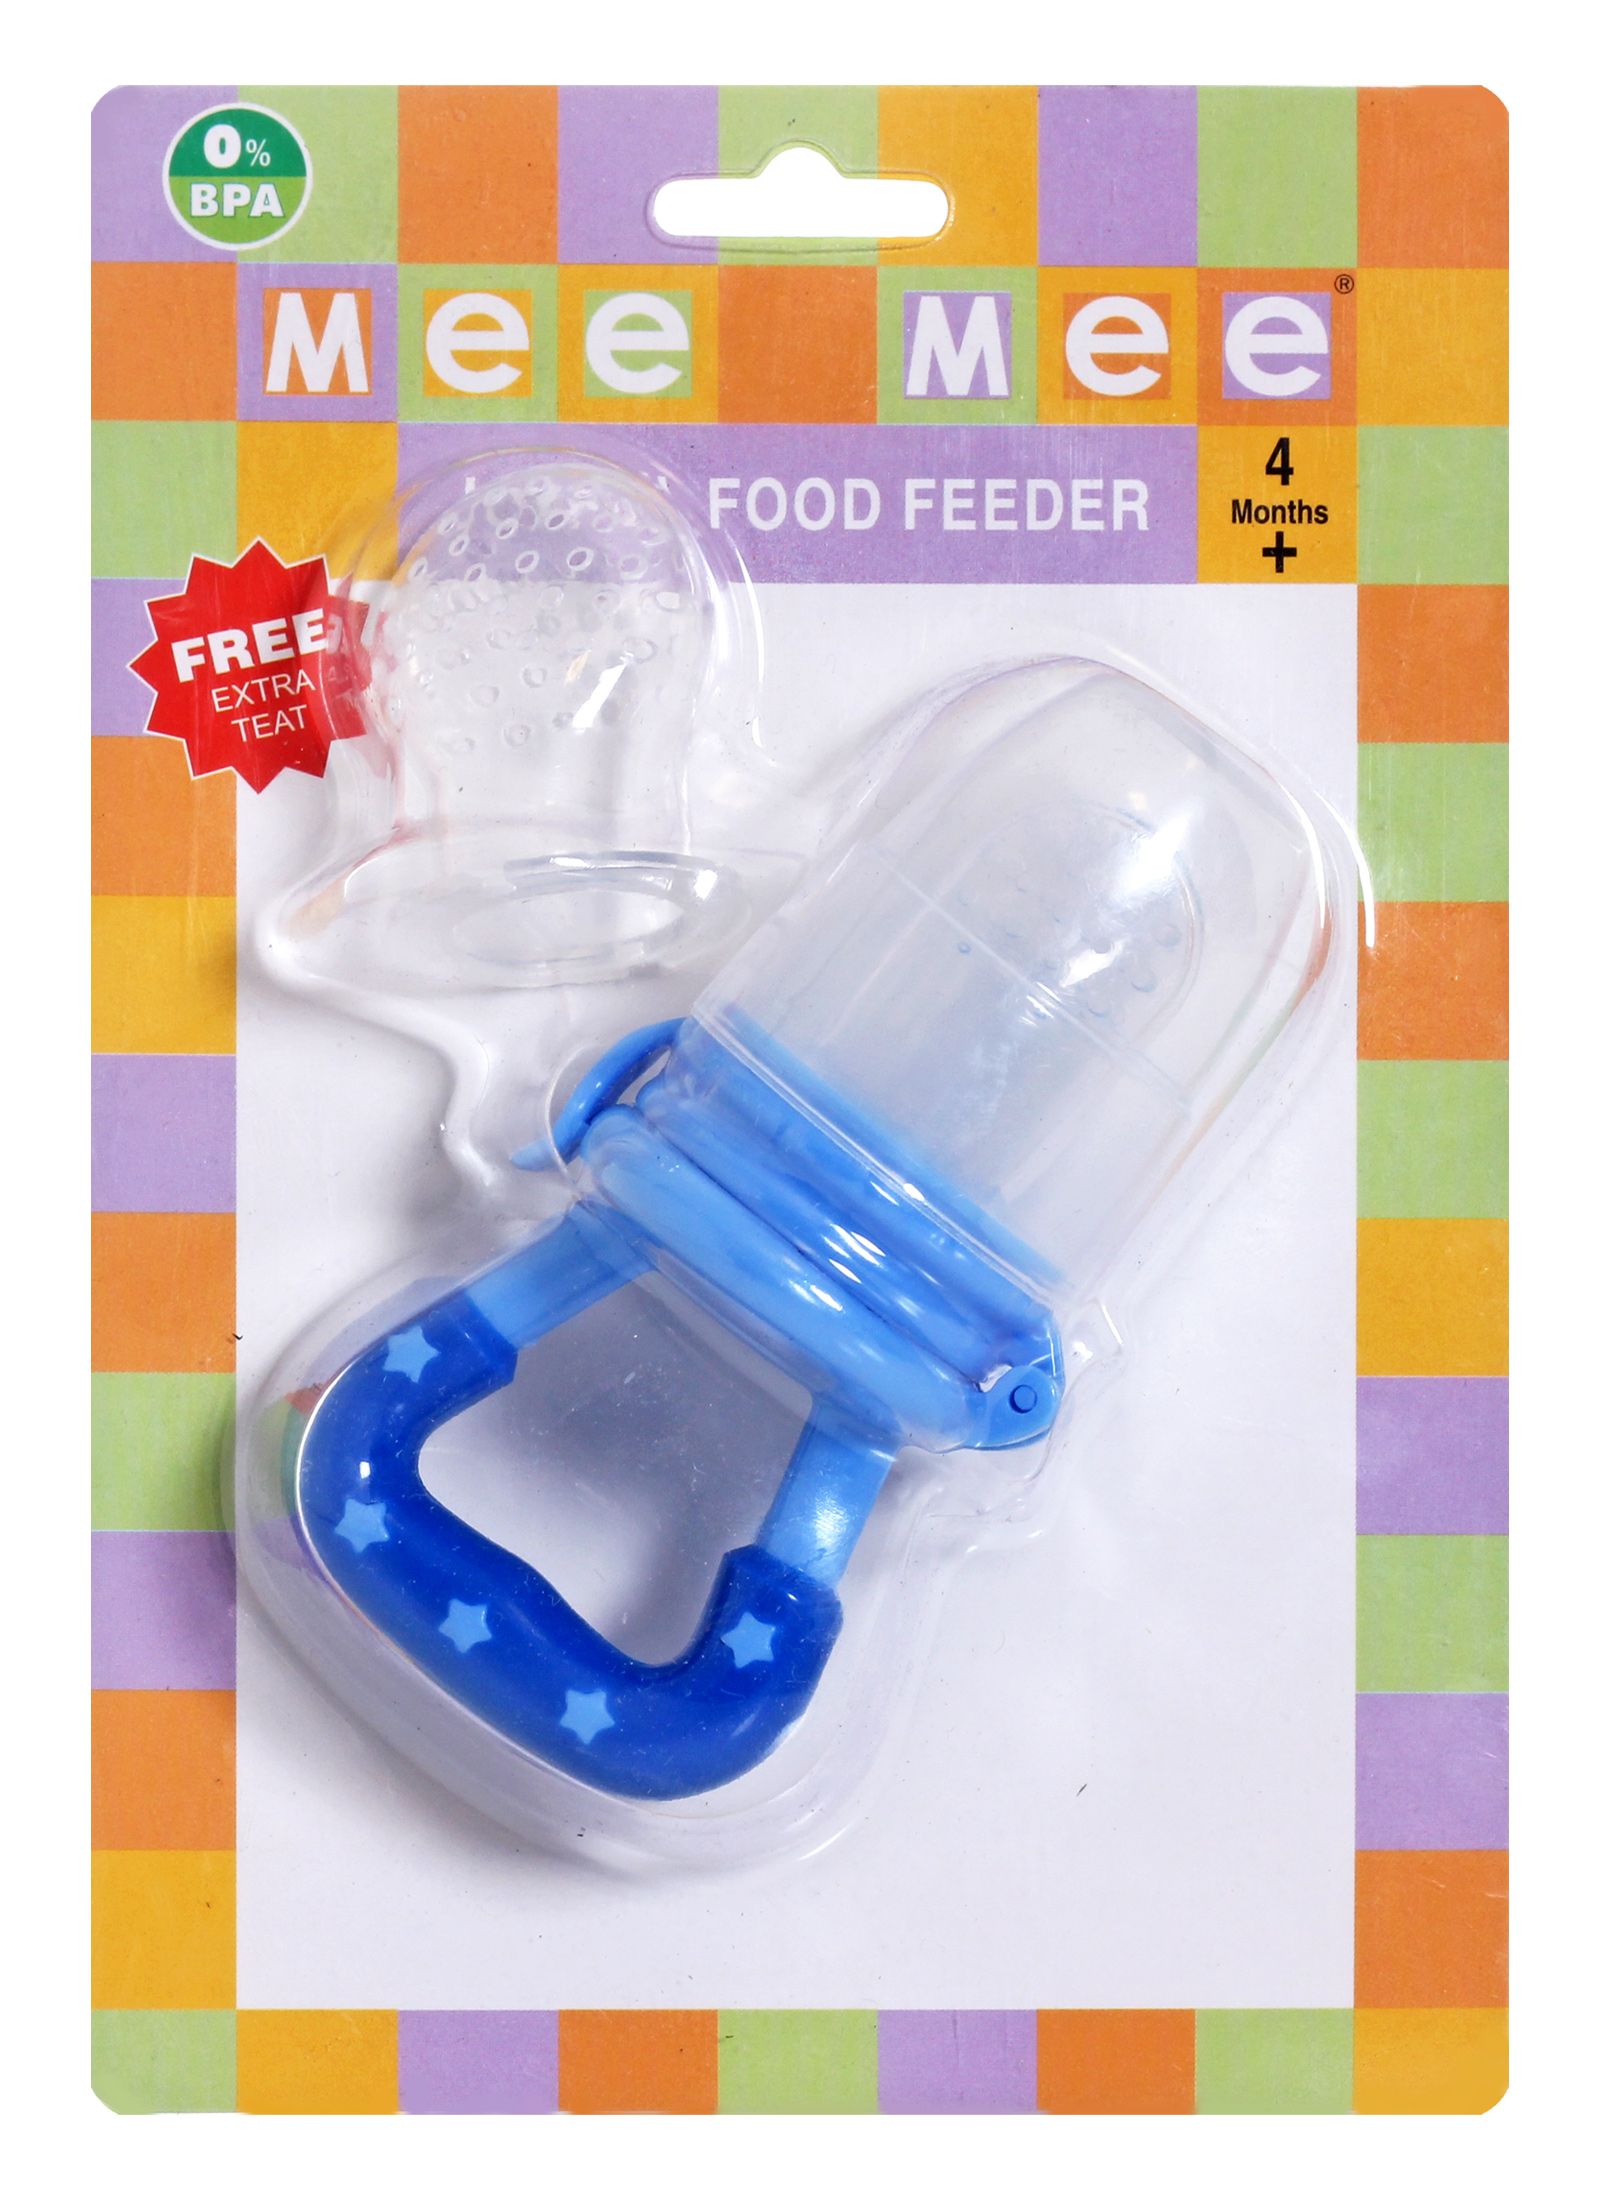 Mee Mee - Joyful Food Feeder